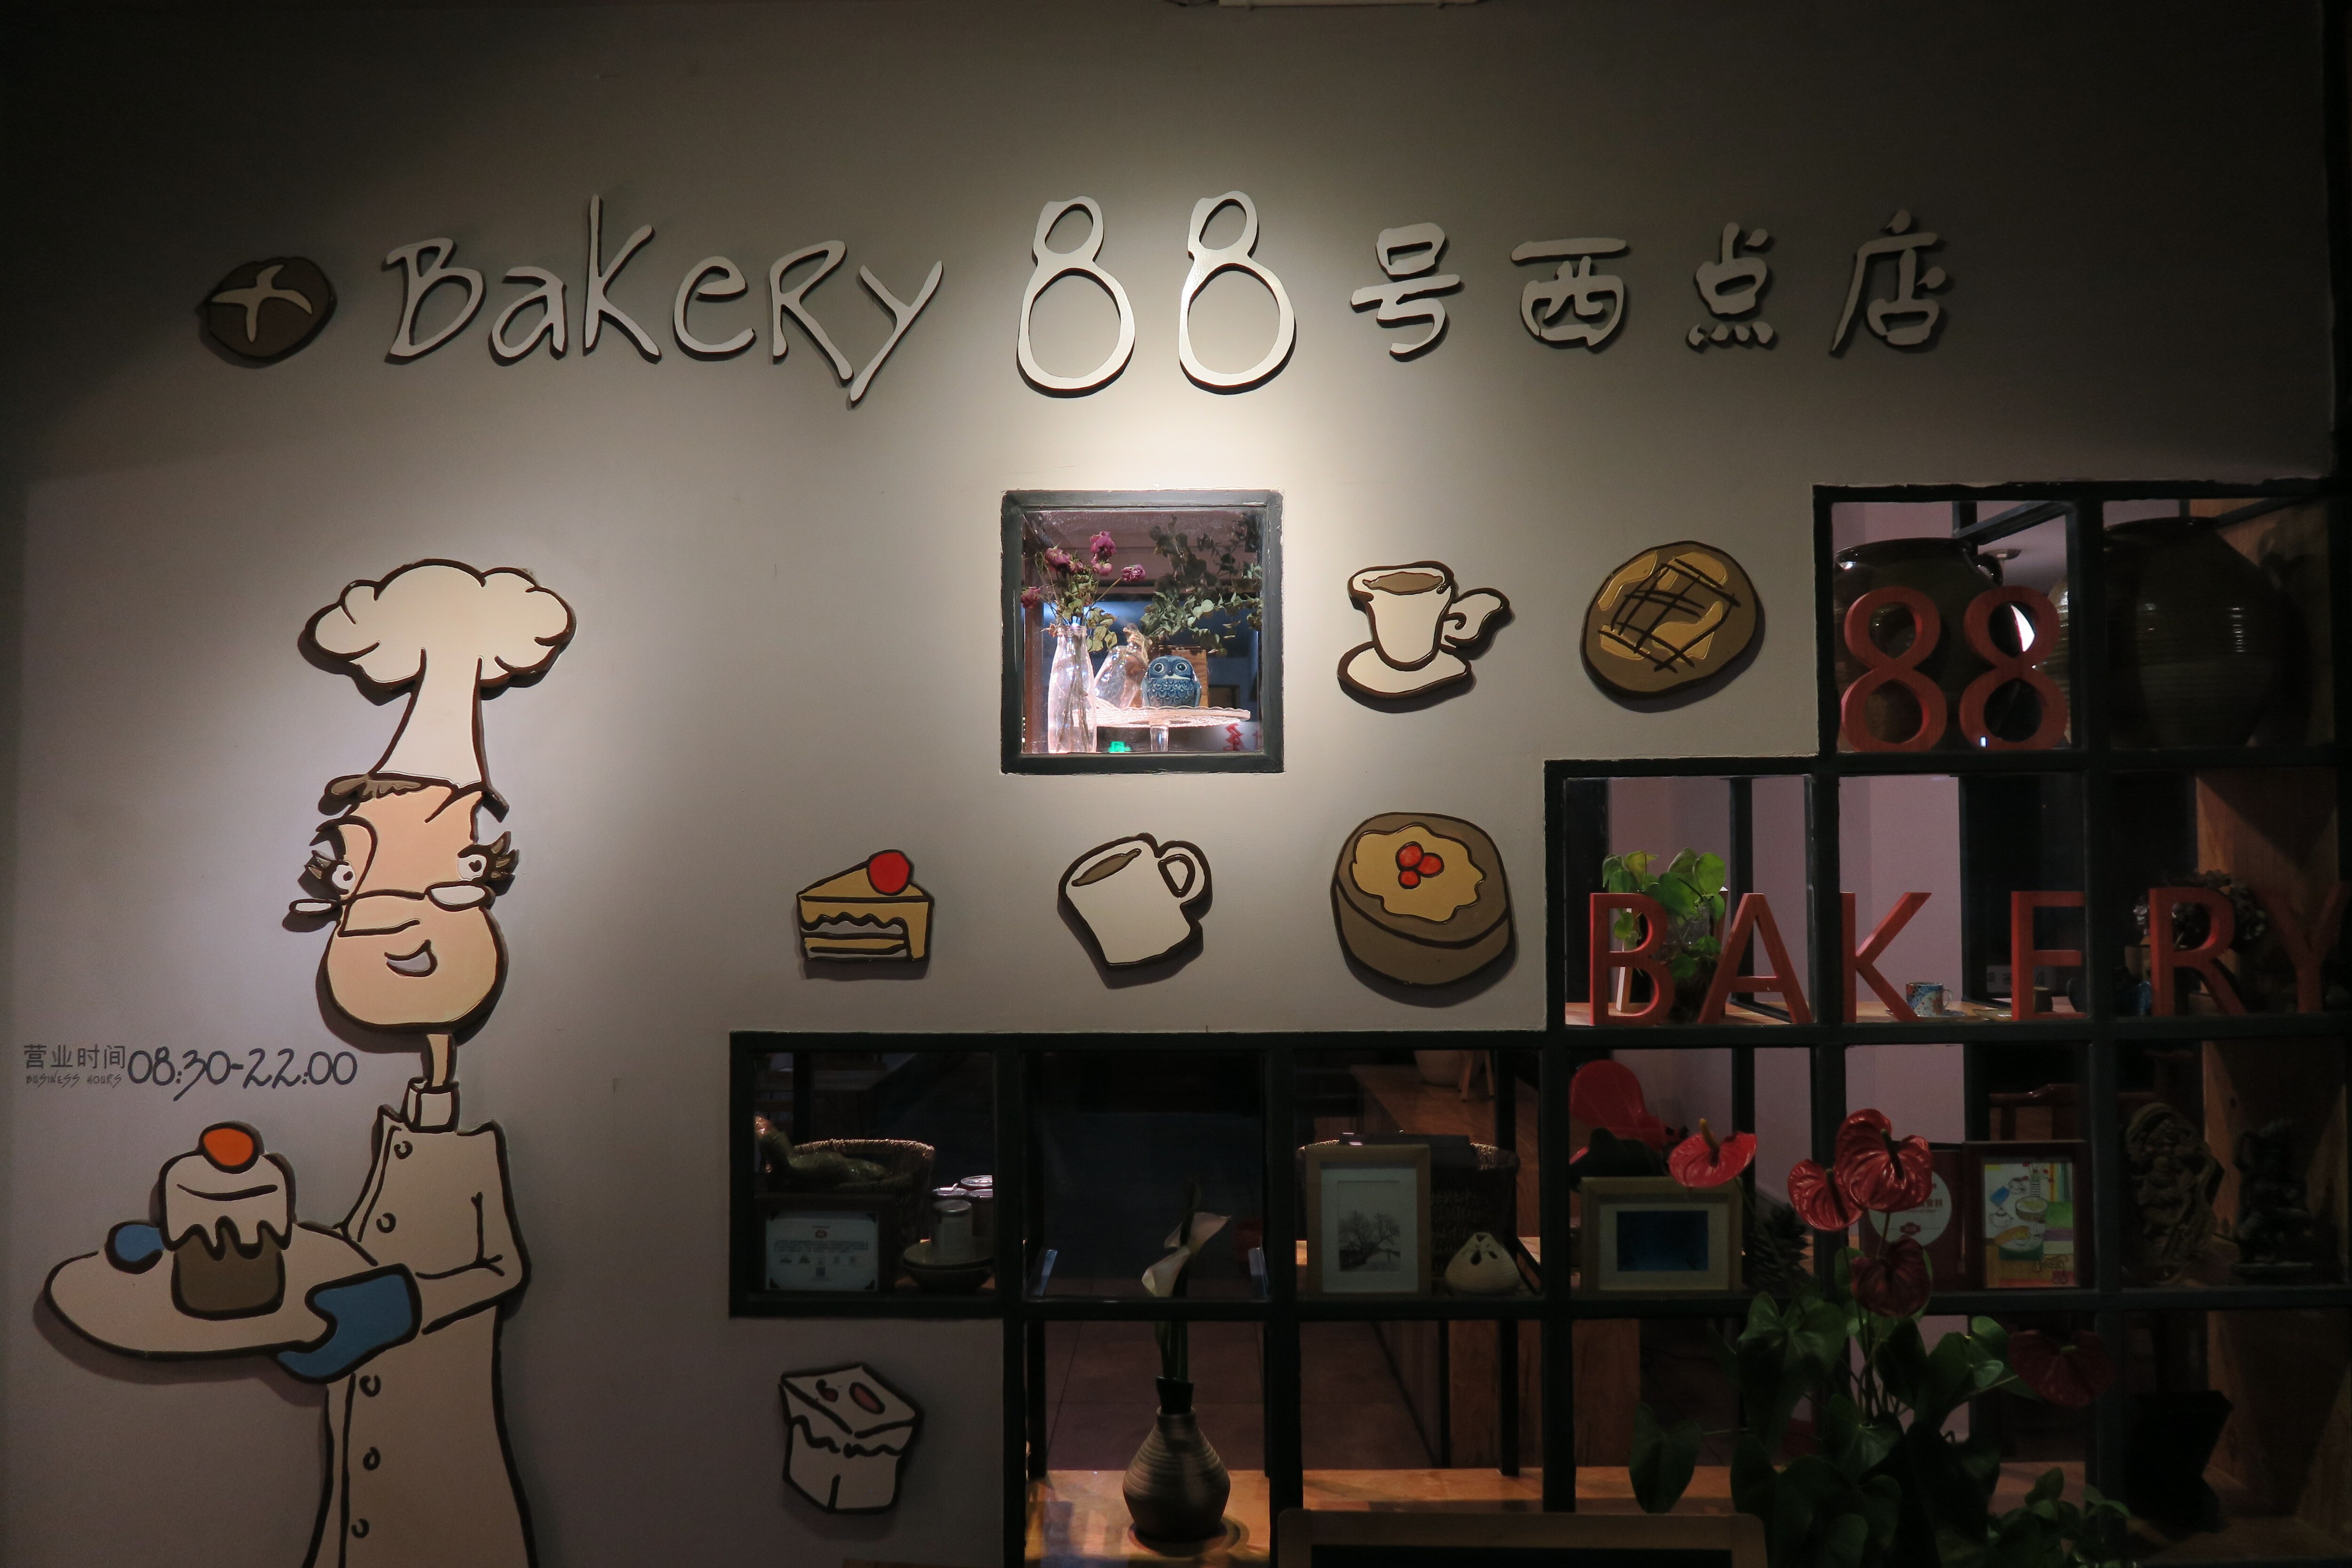 Bakery 88